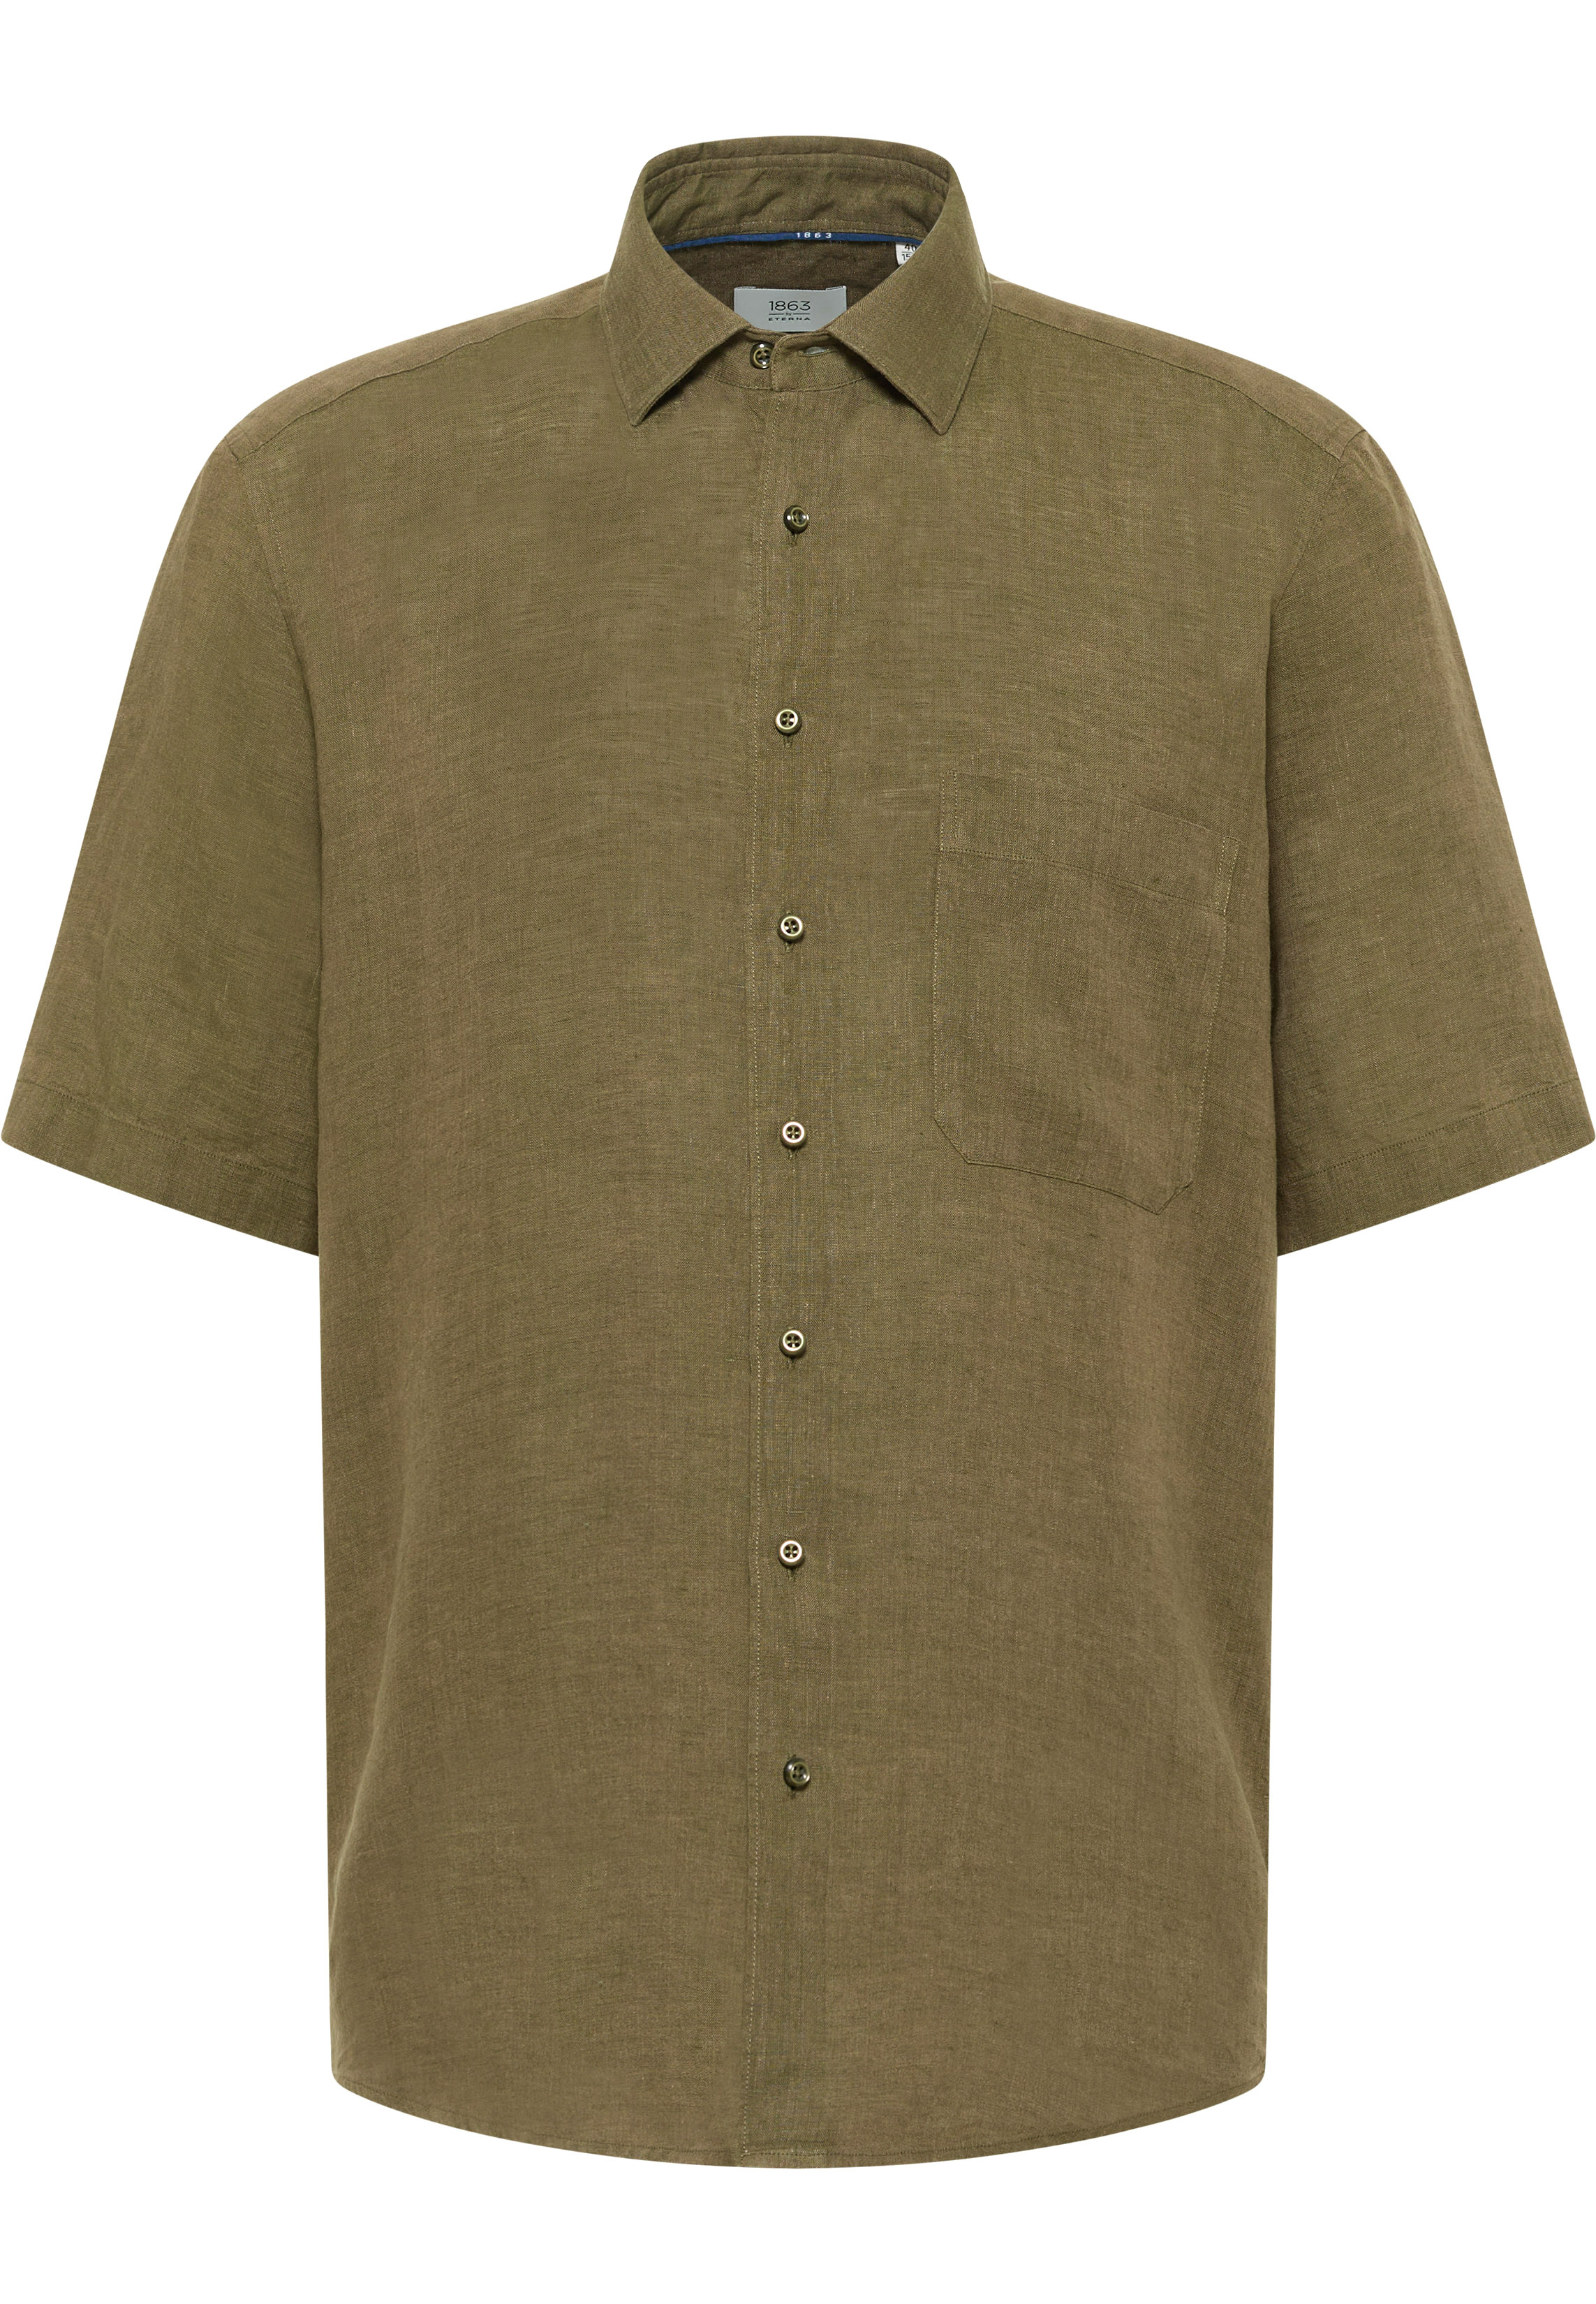 COMFORT FIT Linen Shirt in grün unifarben